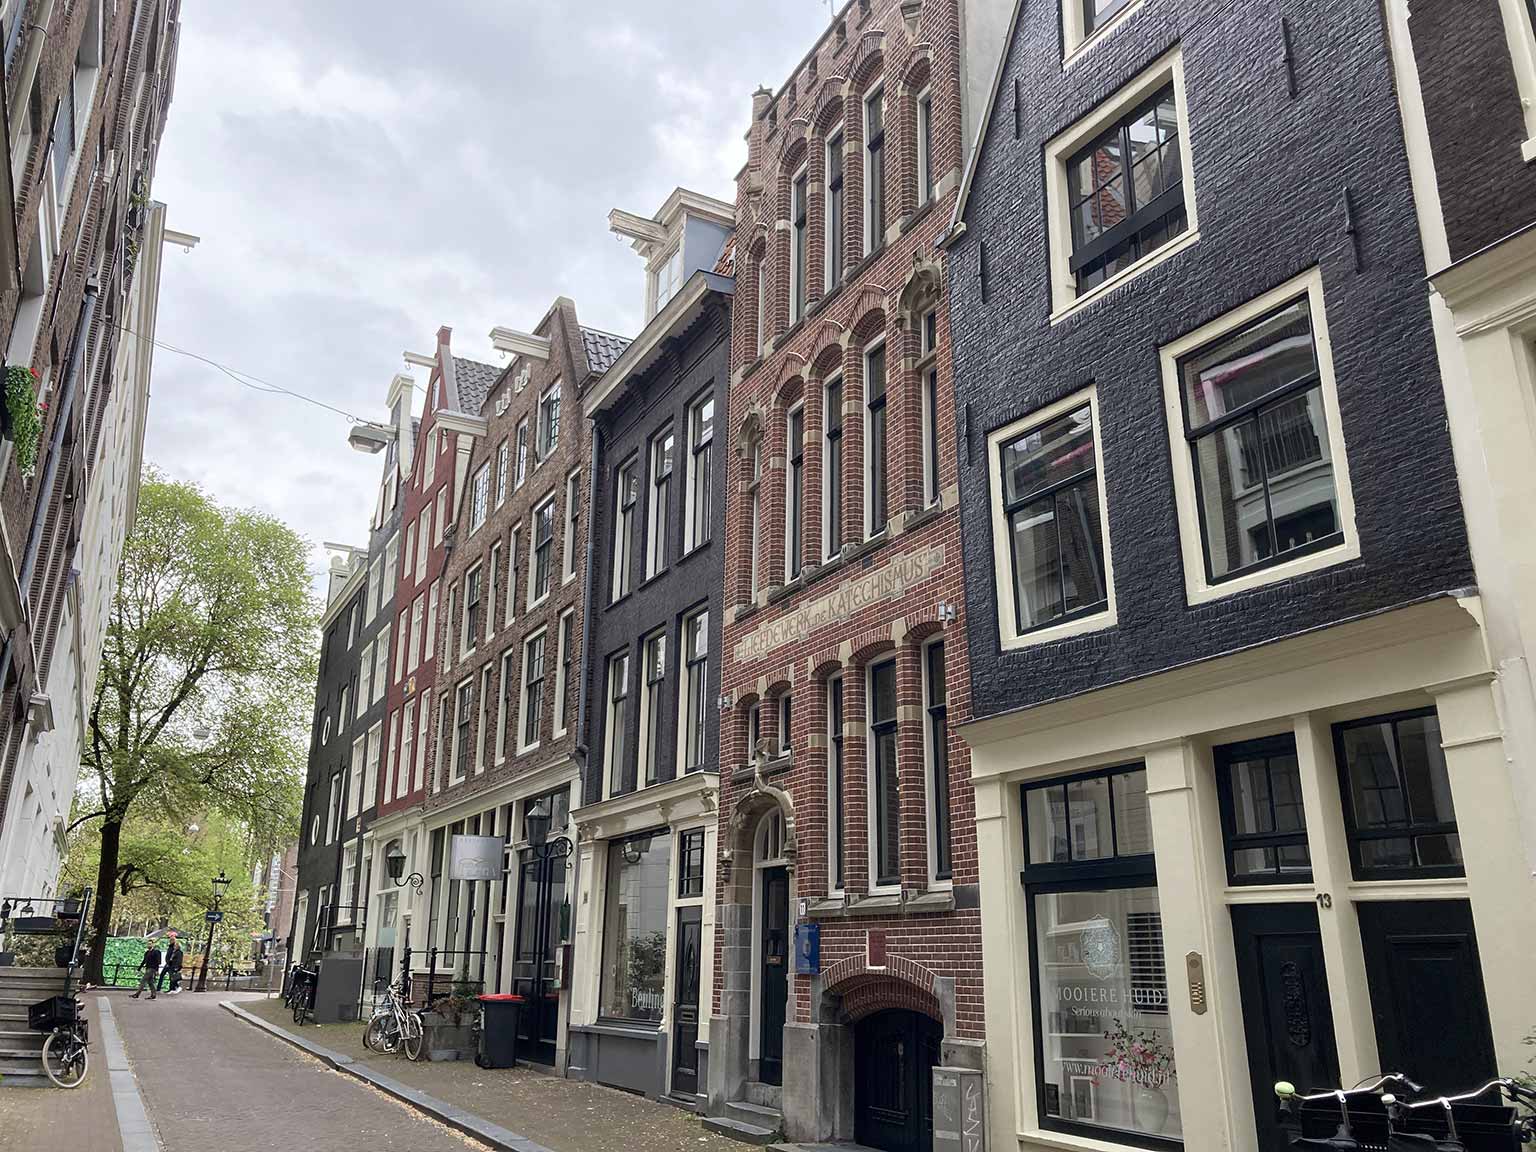 Beulingstraat, Amsterdam, seen from number 6 towards the Singel